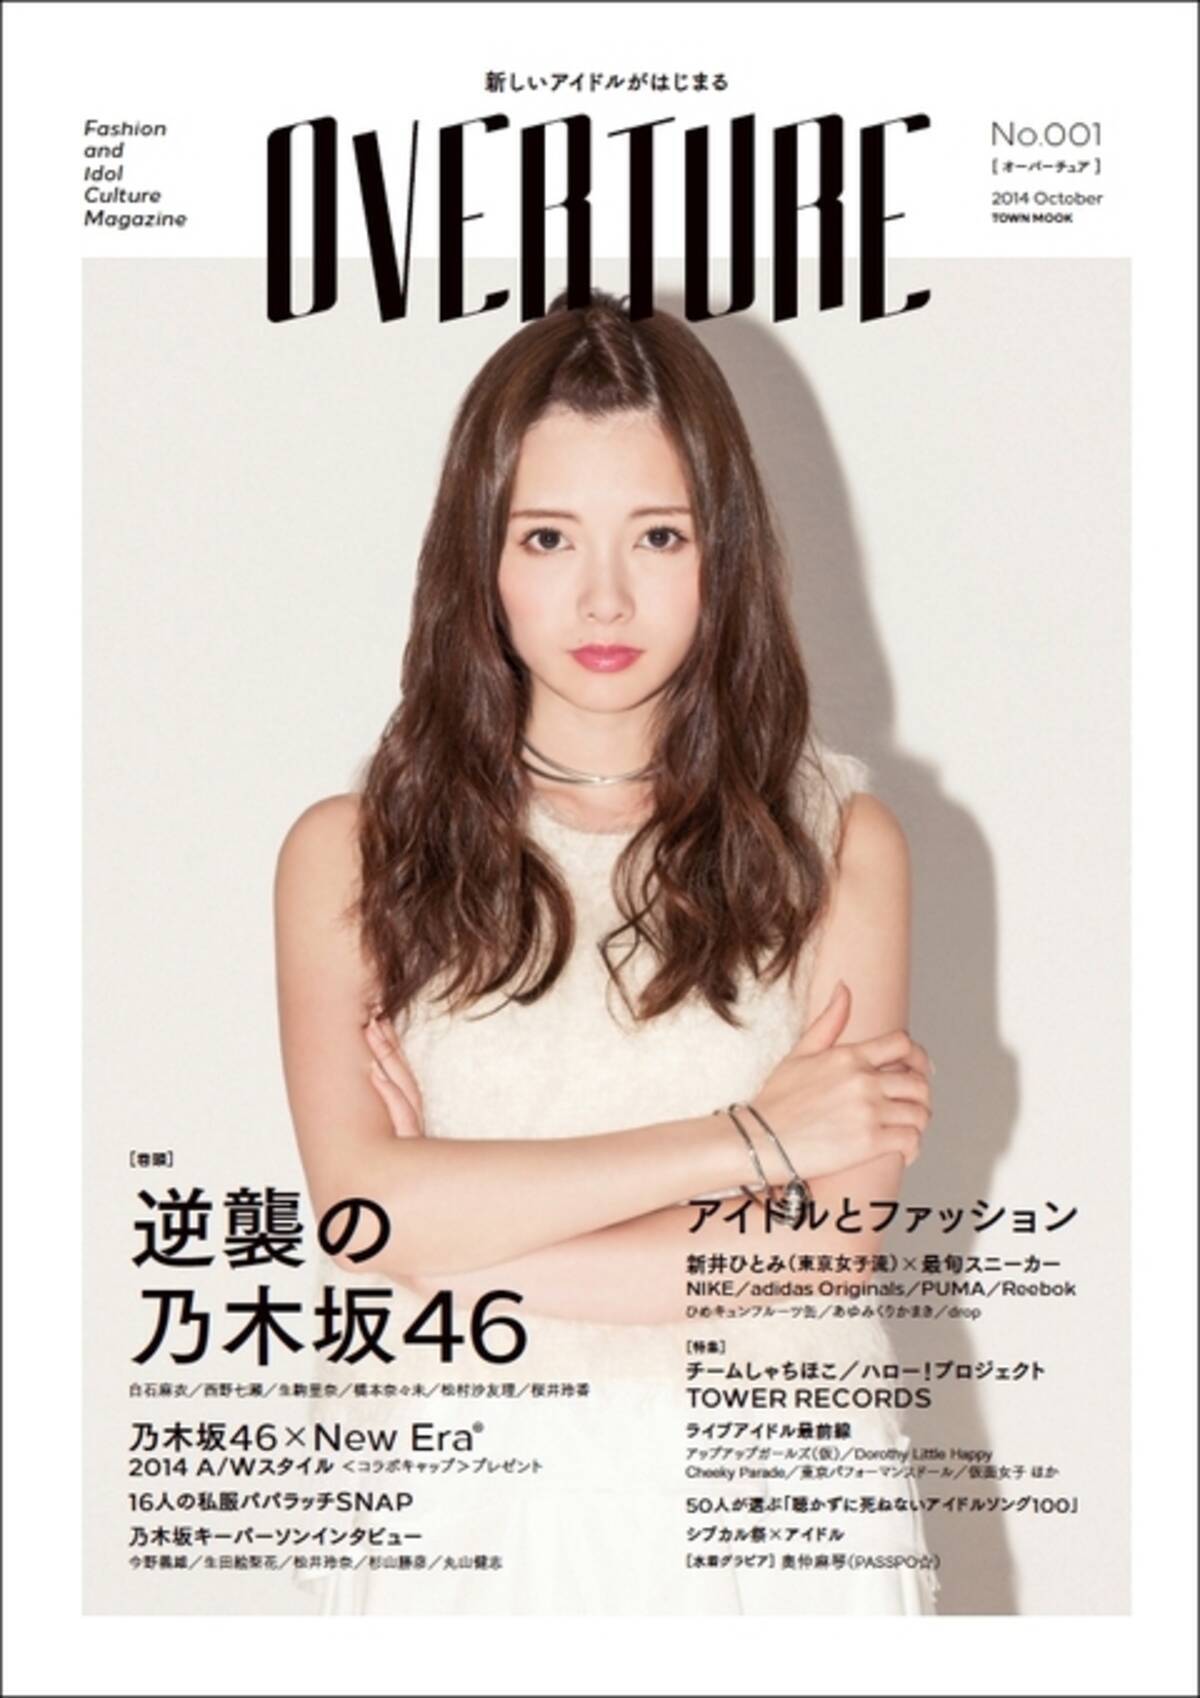 キミはこんな白石麻衣を見たことがあるか アイドル ファッションのカルチャー誌 Overture 誕生 14年9月27日 エキサイトニュース